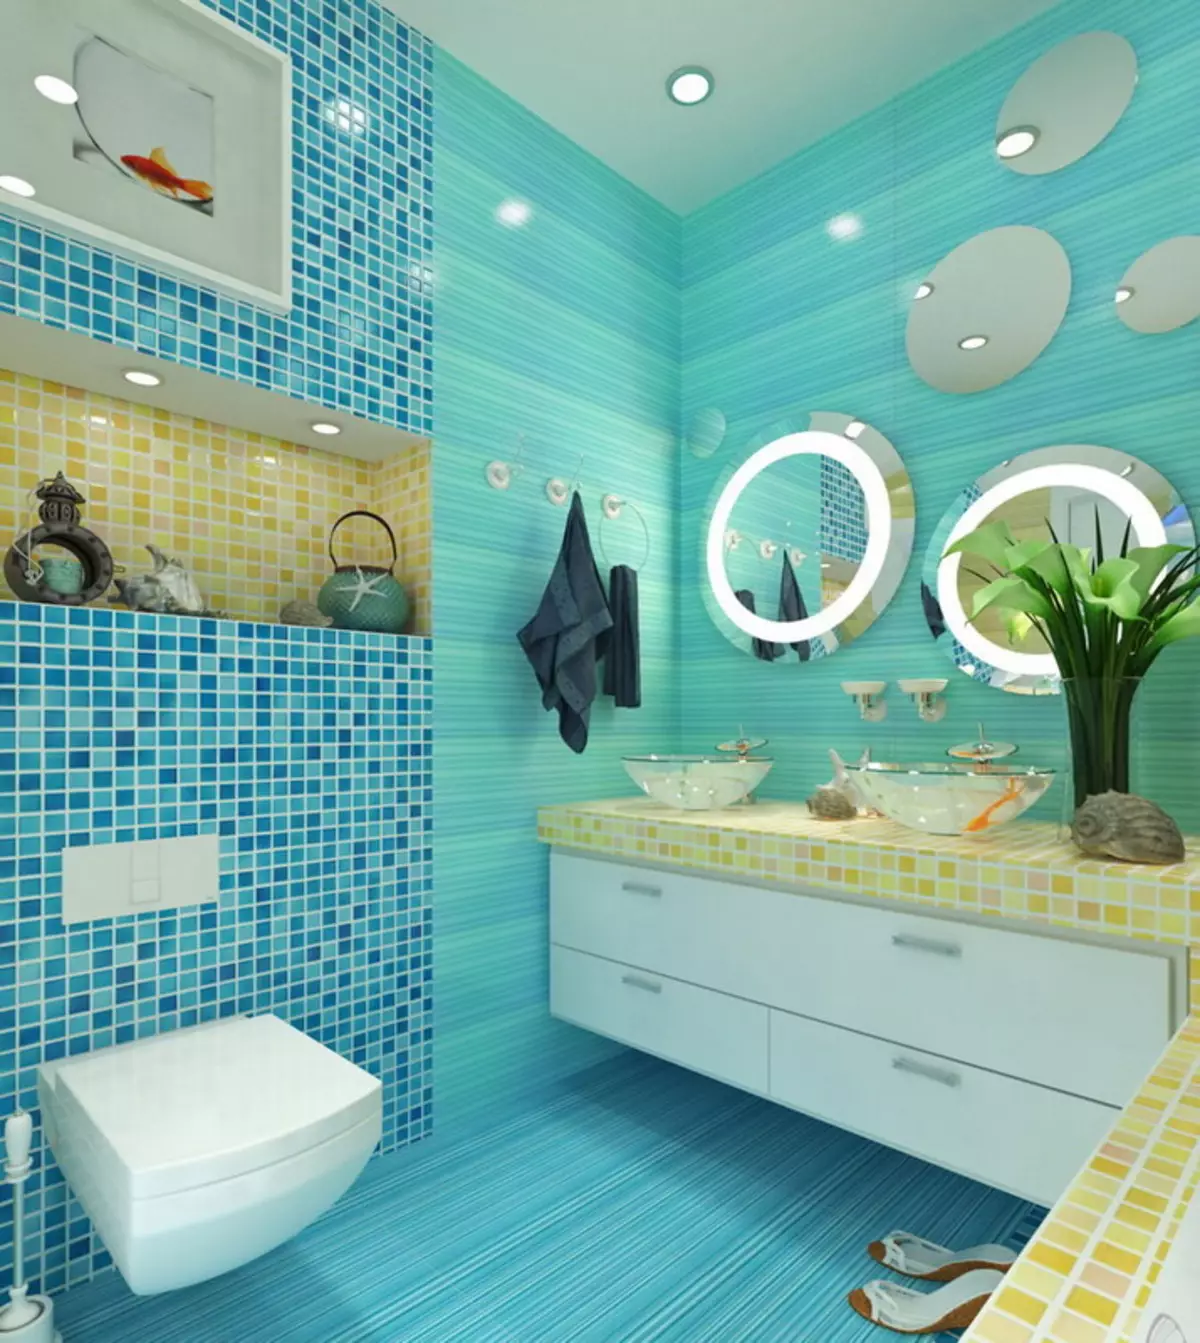 ห้องน้ำสีเขียวขุ่น (61 รูป): ตัวอย่างของการออกแบบห้องน้ำในสีนี้ เราเข้าใจในสีสร้างการตกแต่งภายในที่สวยงาม 10203_32